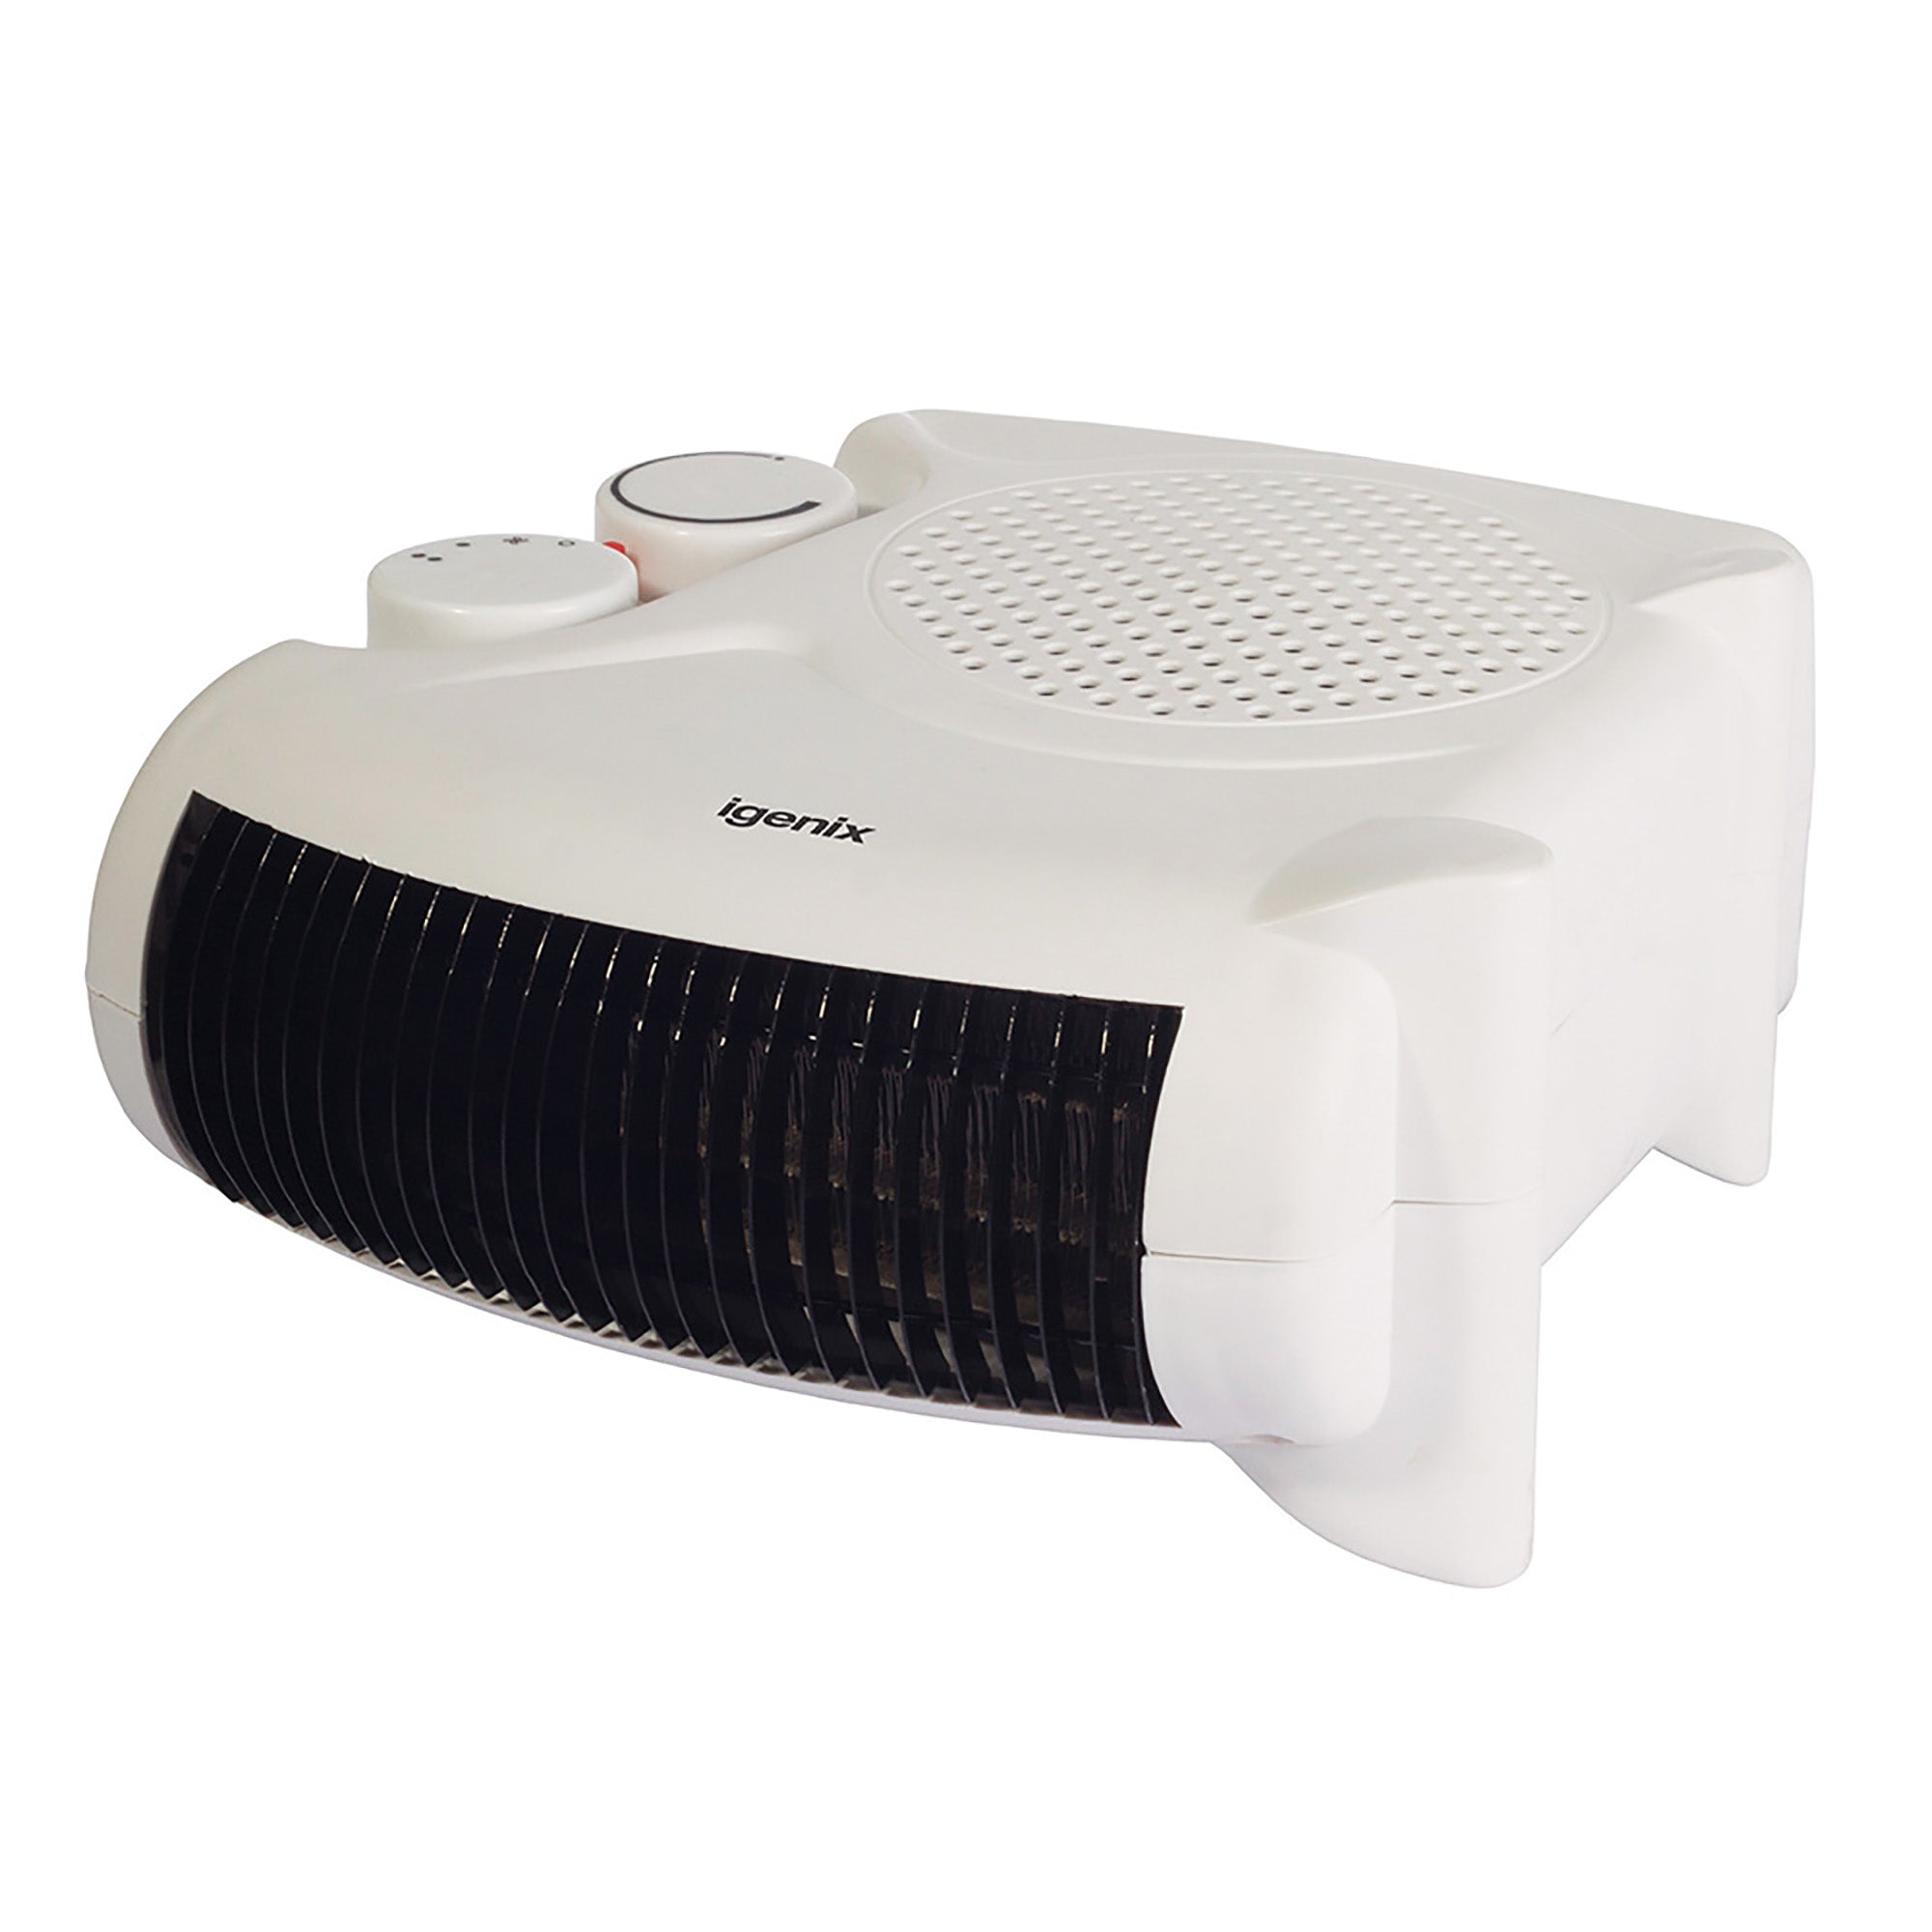 Fan Heater, 2 Heat Settings, 2000W, White